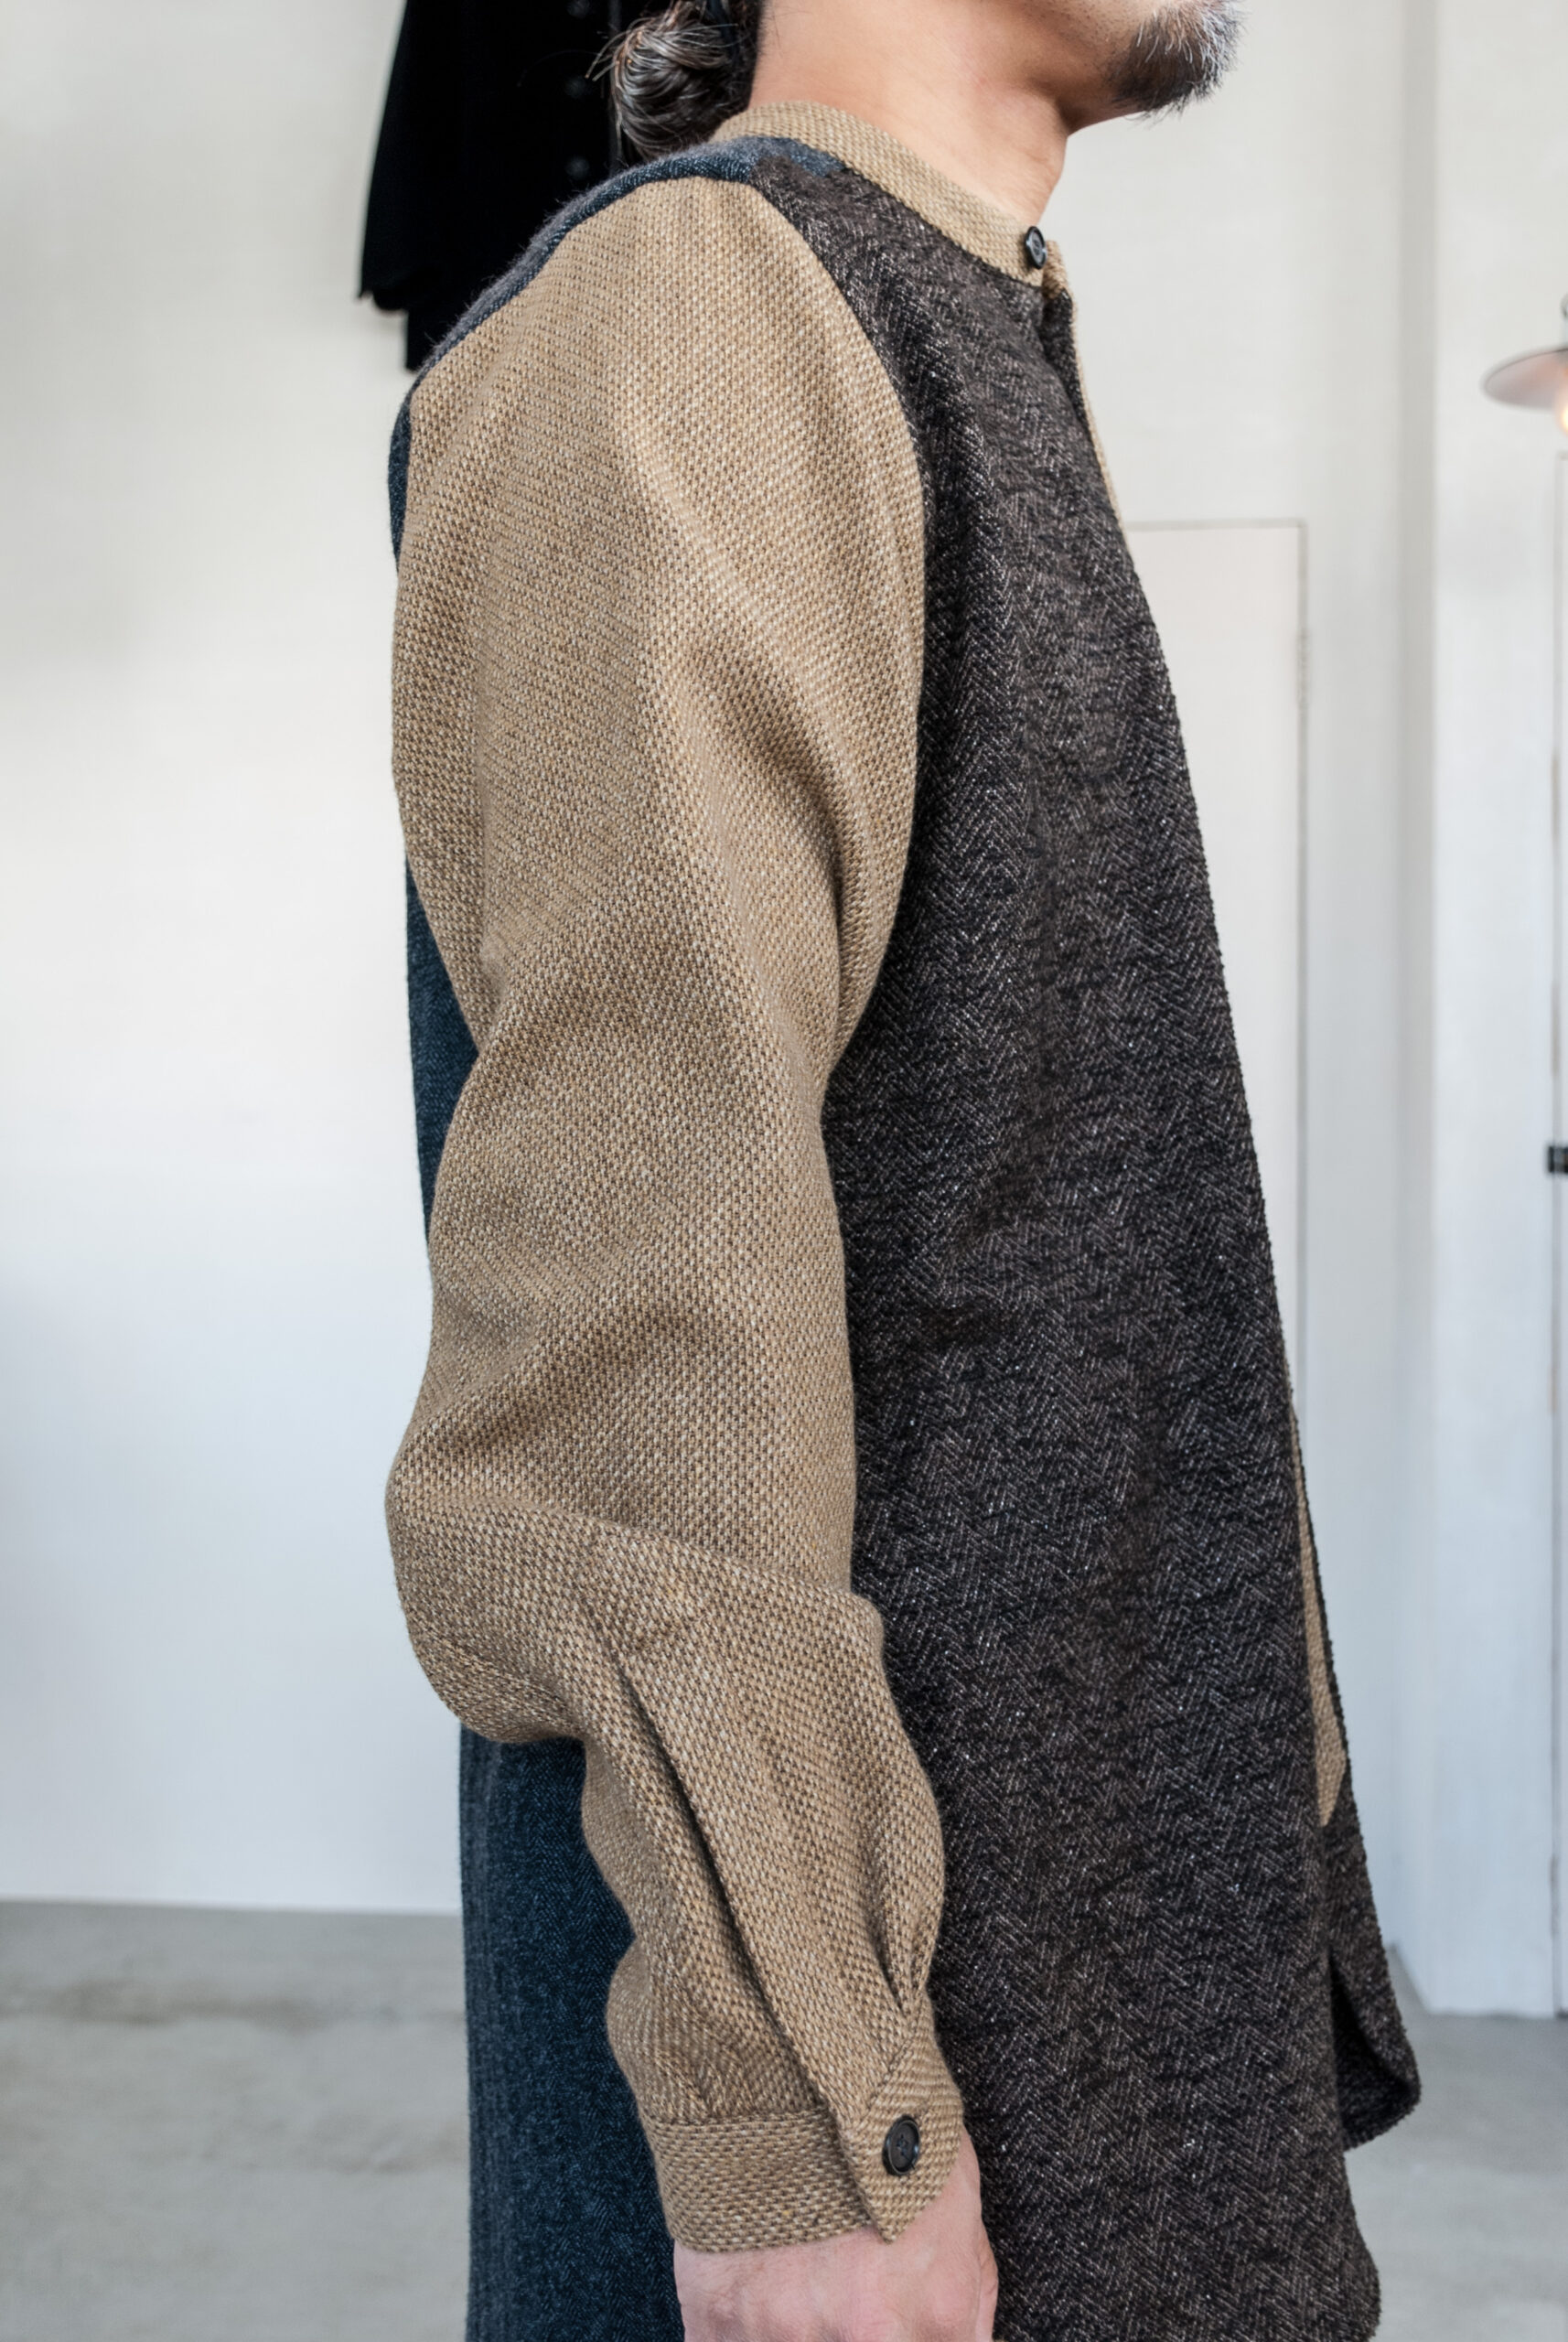 Frank Leder Vintage Fabric Edition Vest - ベスト